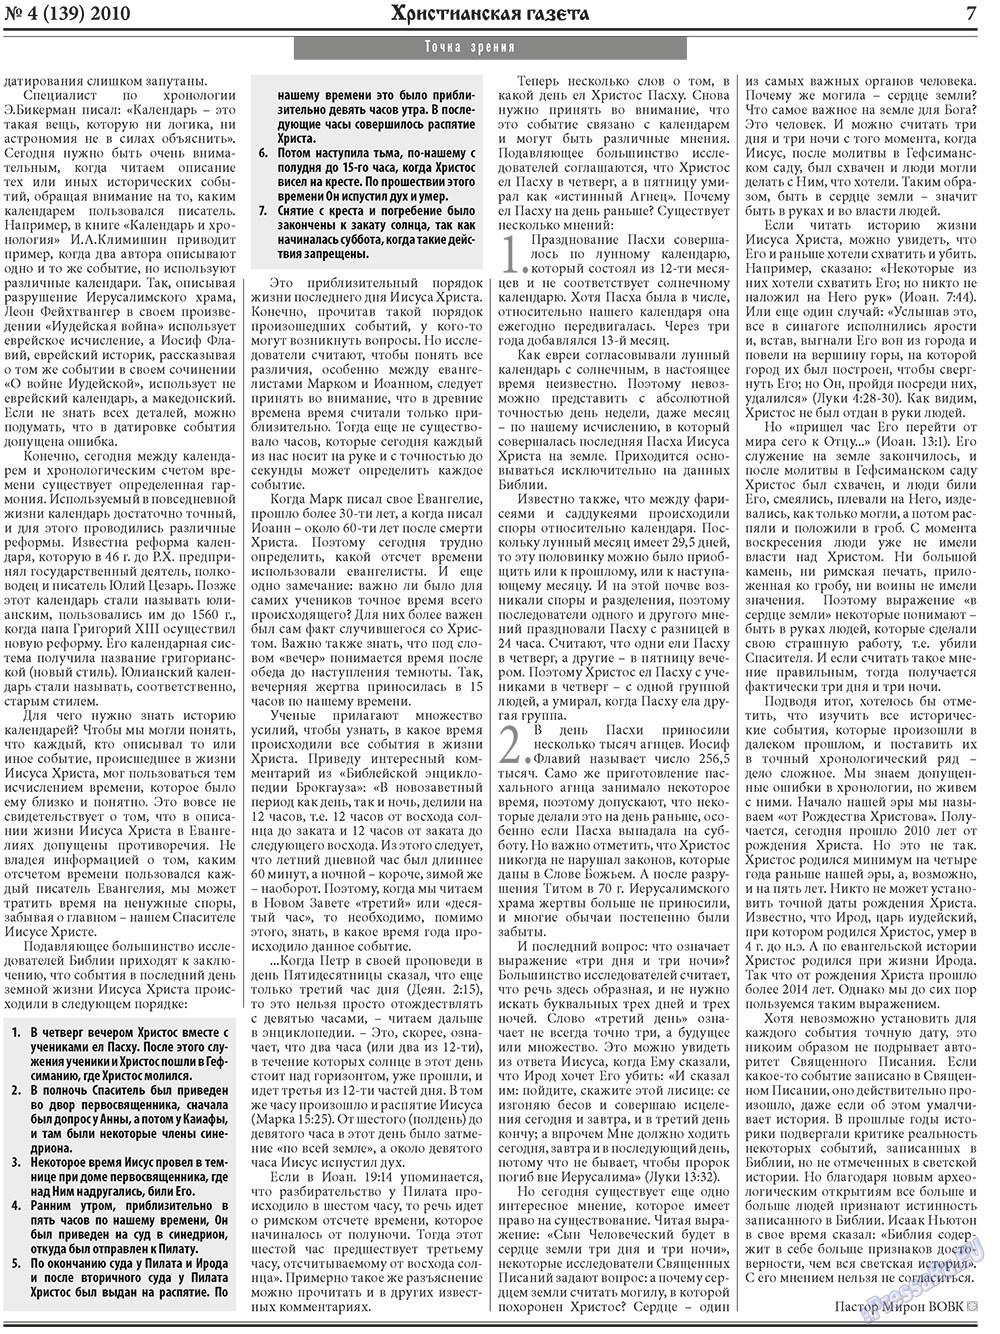 Христианская газета, газета. 2010 №4 стр.7